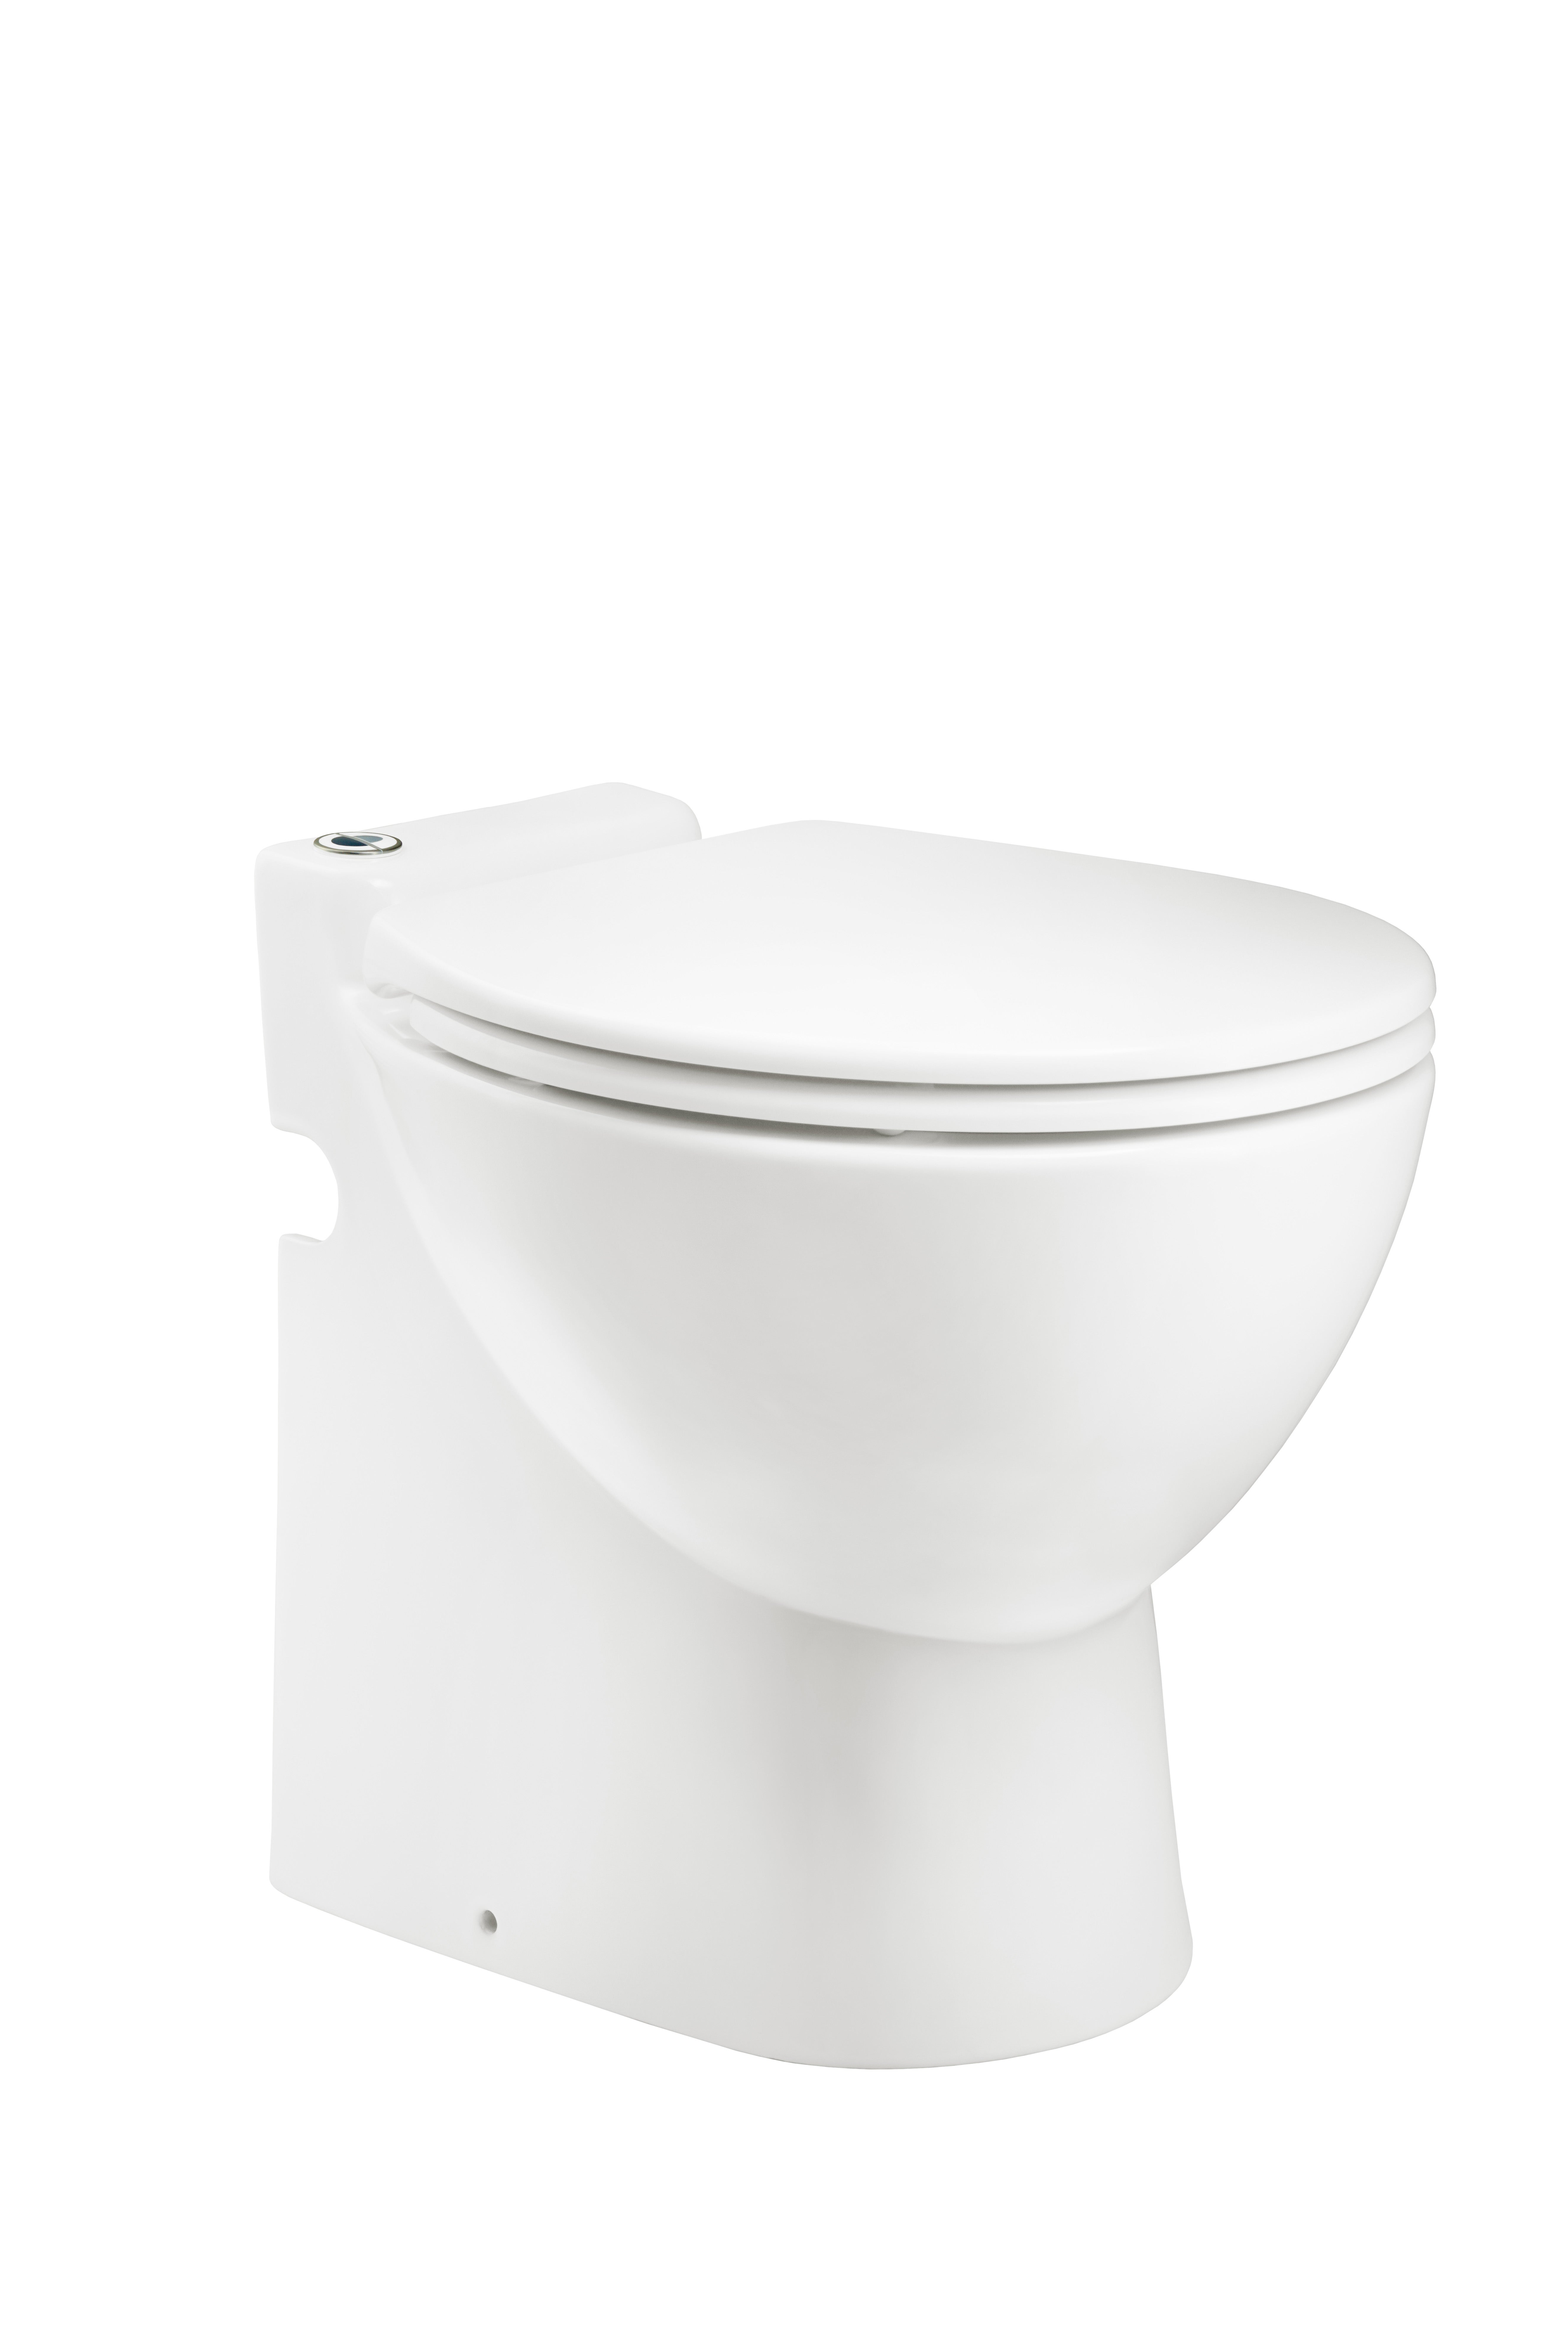 Cuvette WC broyeur intégré Ancoflow en céramique blanc à prix mini